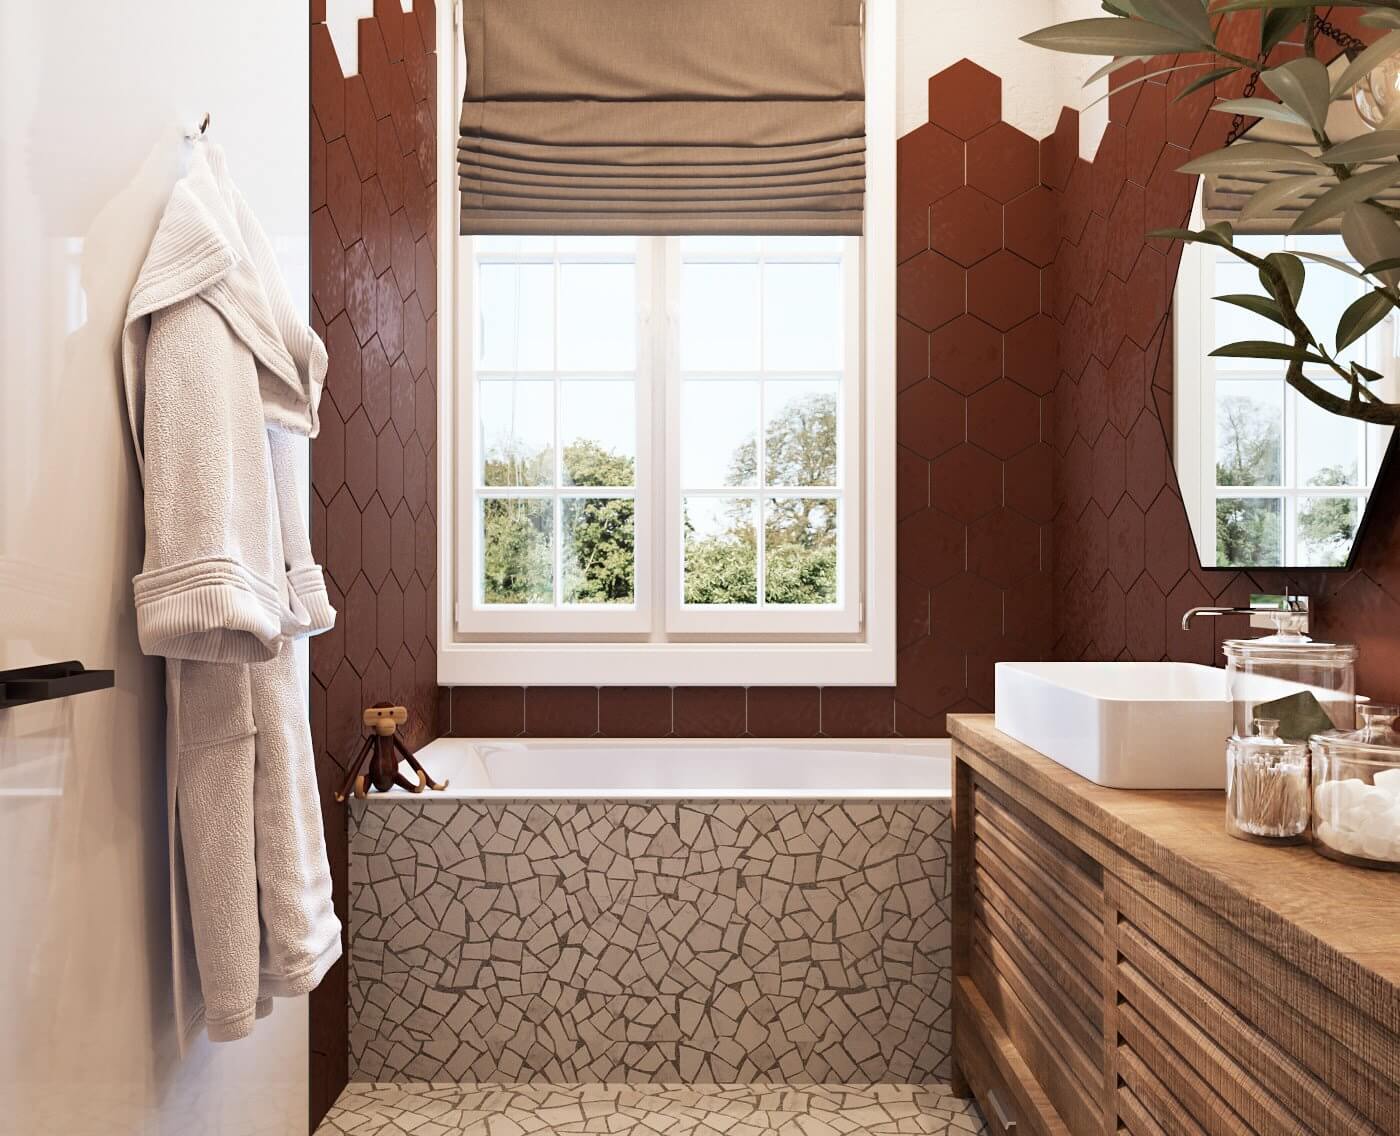 The Villa in Italy guest bathroom bathtub towels - cgi visualization